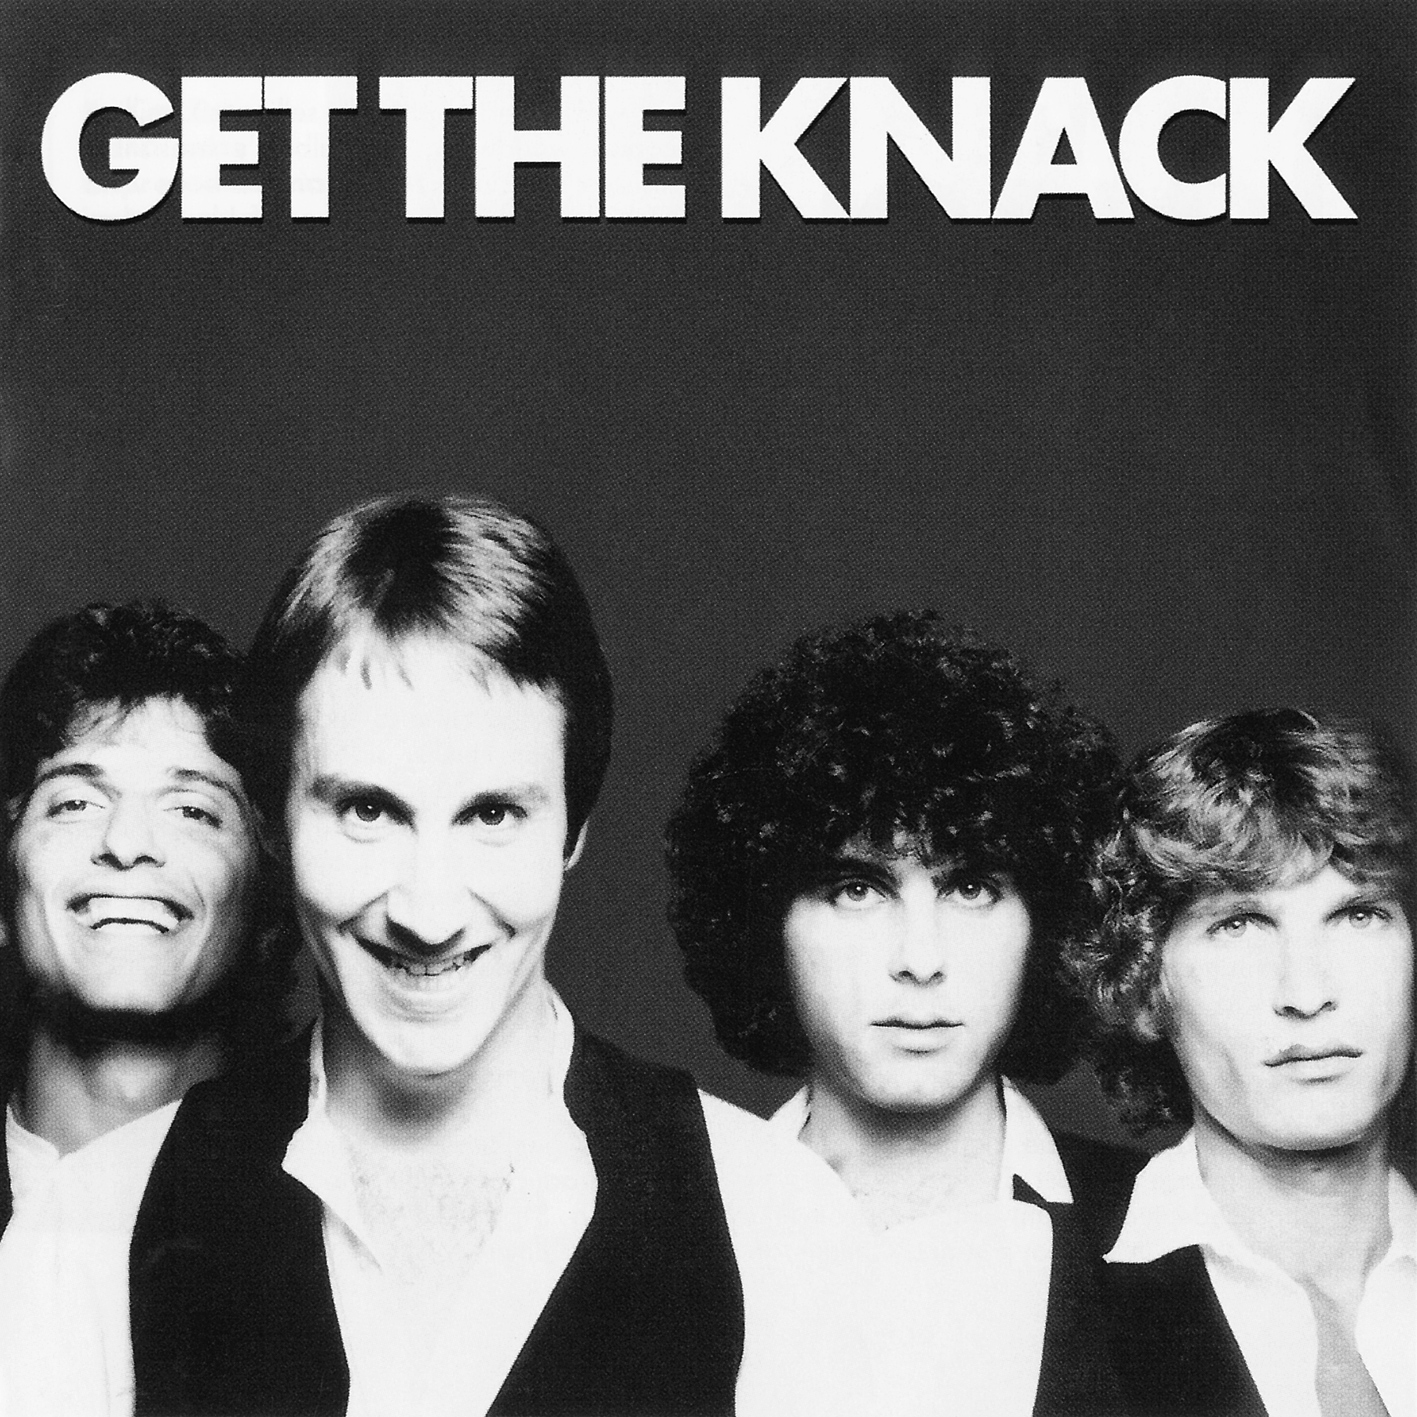 The Knack - Get The Knack (1979/2013) [HDTracks FLAC 24bit/192kHz]